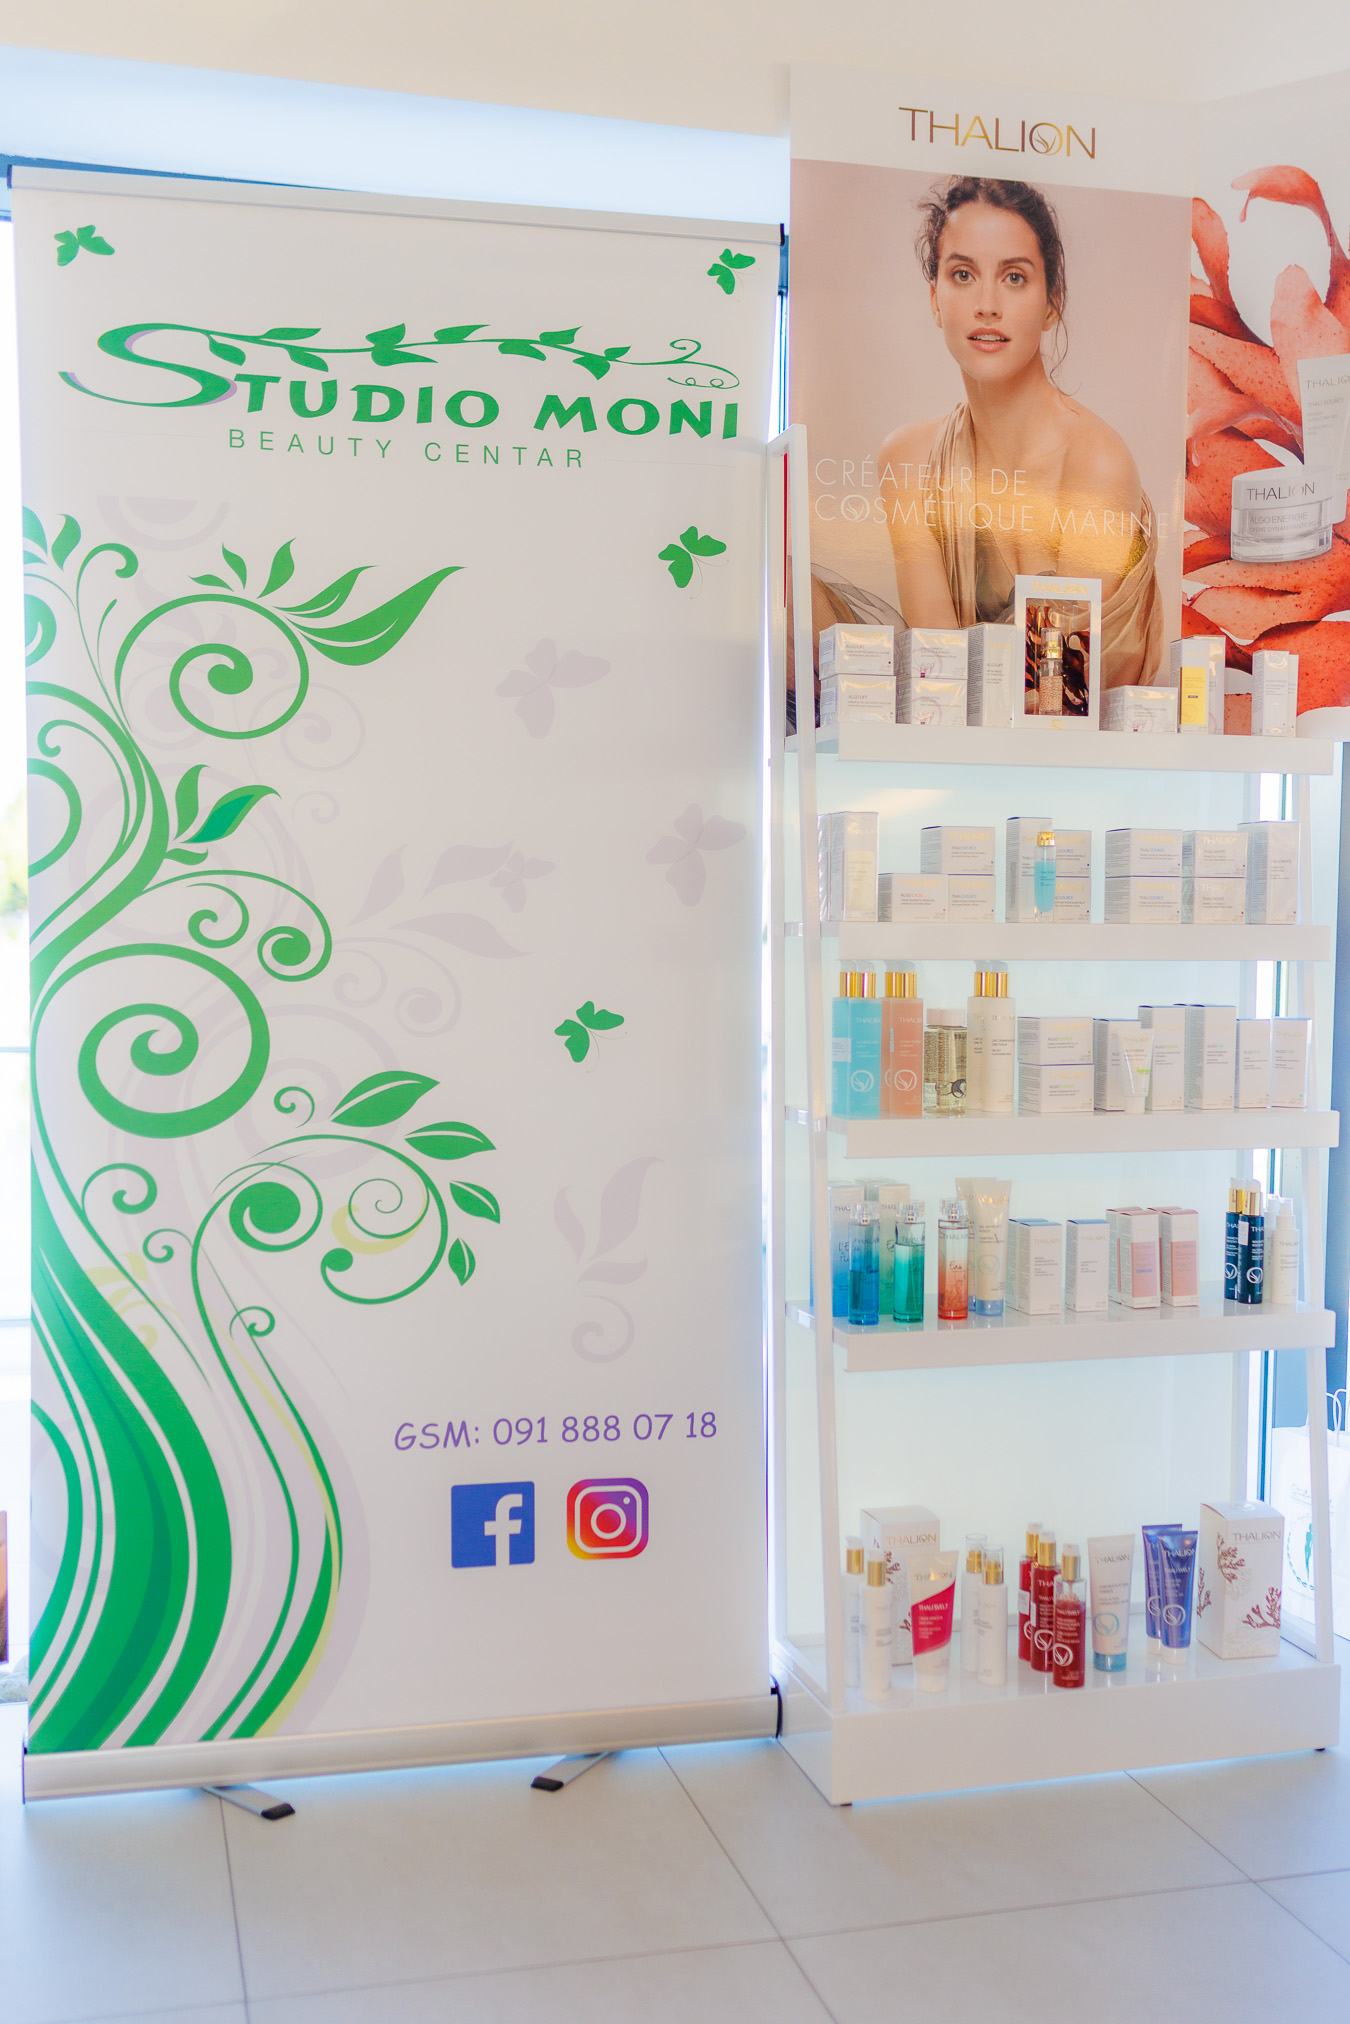 Studio Moni beauty centar priredio beauty druženje u Marini Novi